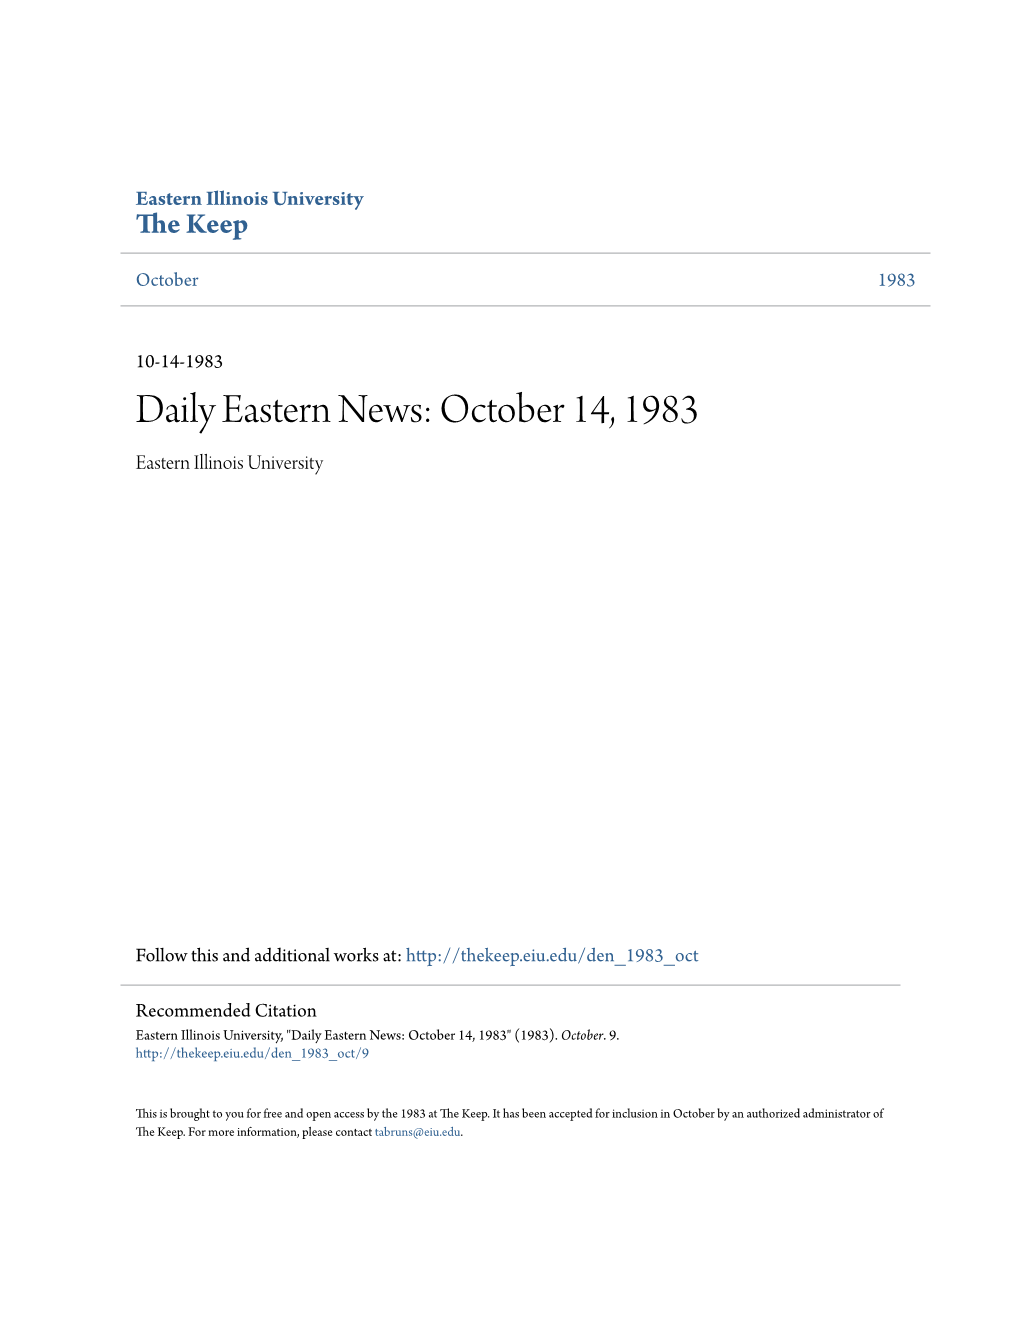 Tern News: October 14, 1983 Eastern Illinois University